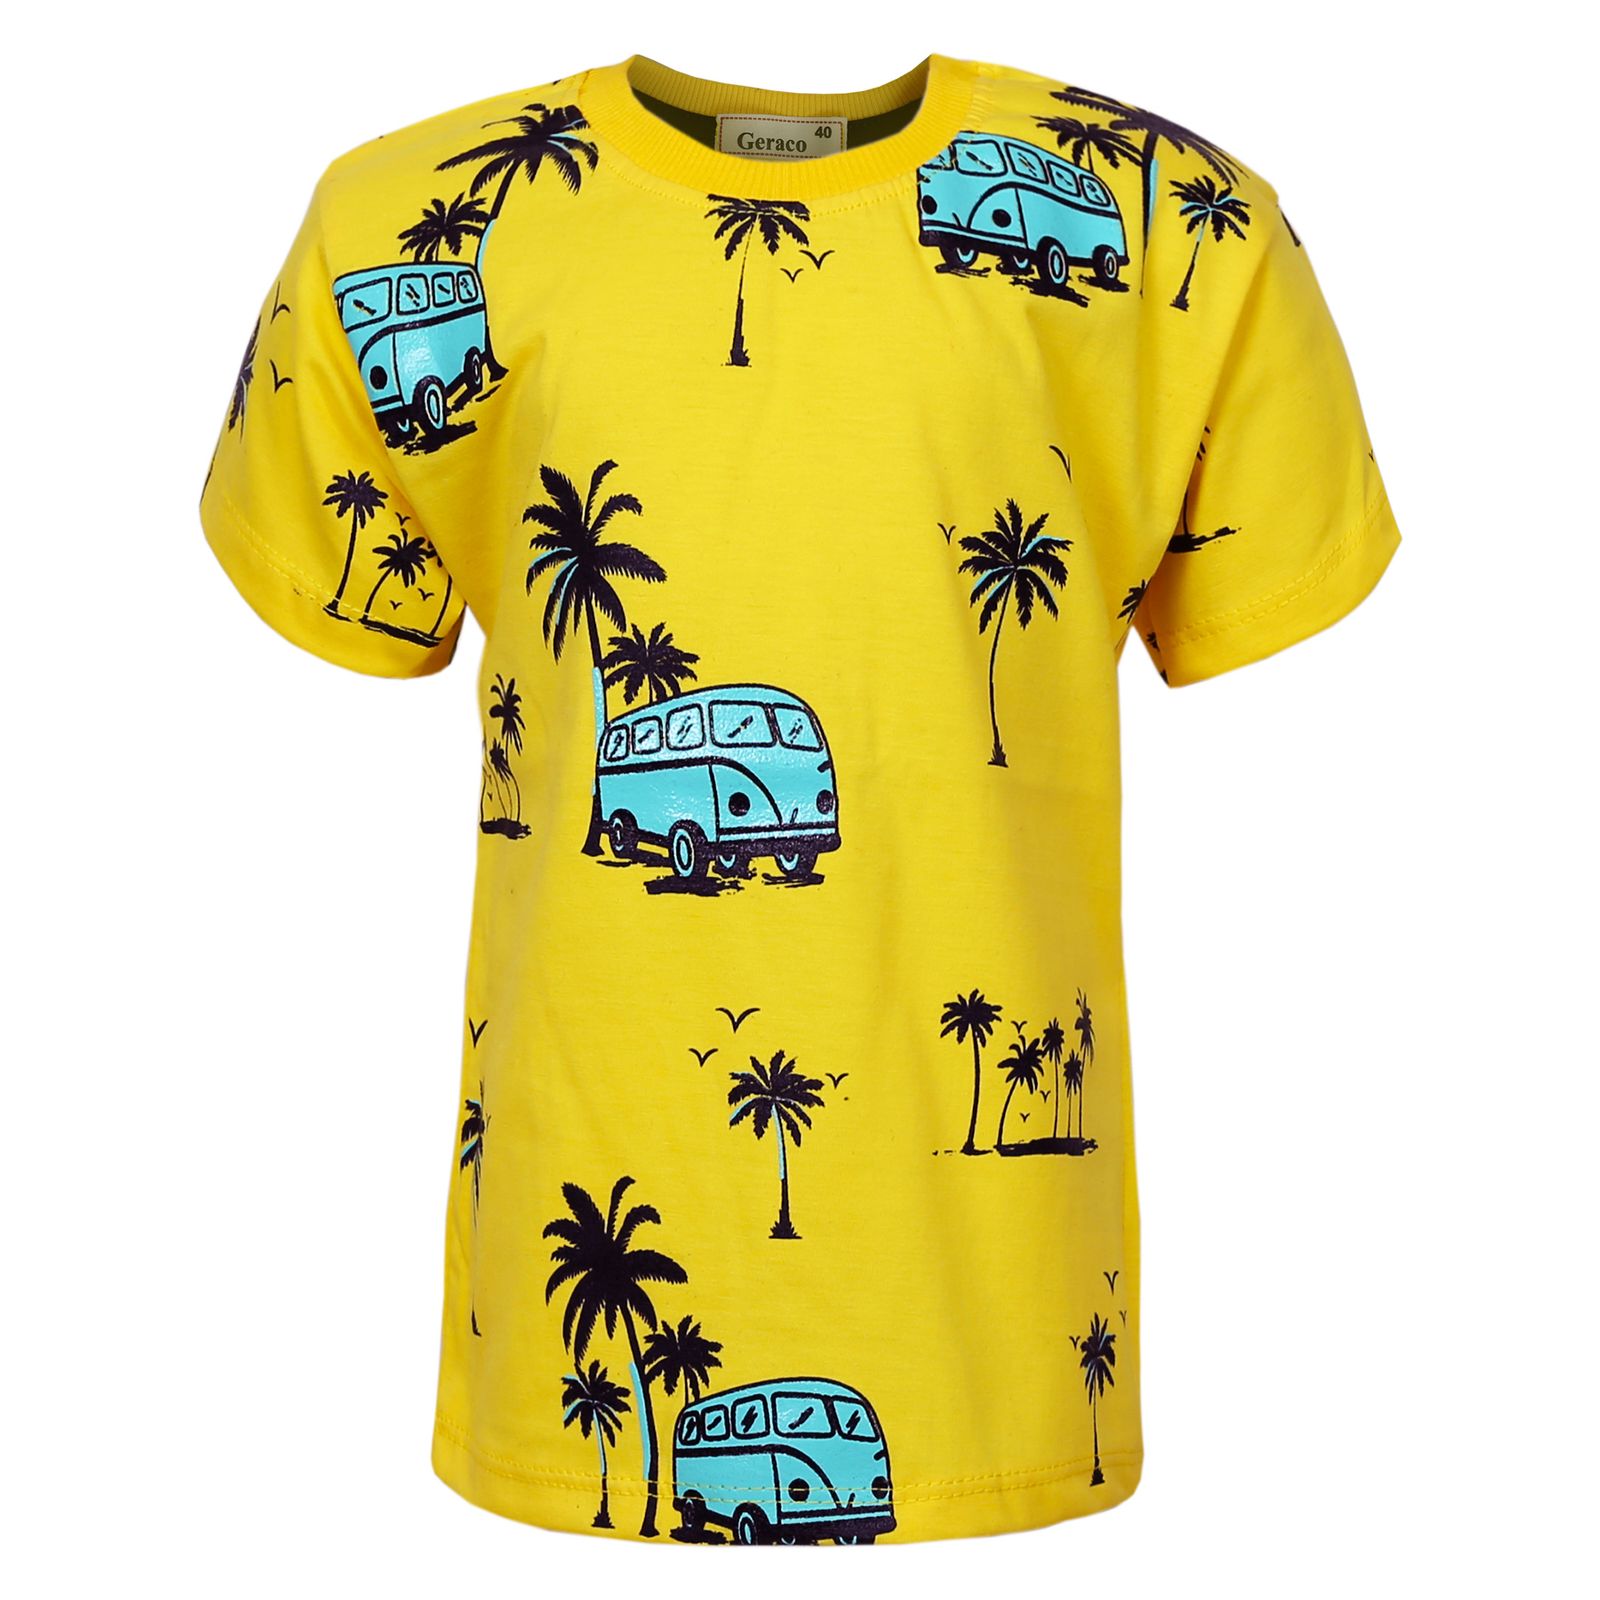 ست تی شرت و شلوارک پسرانه مدل نخل و ماشین رنگ زرد -  - 2